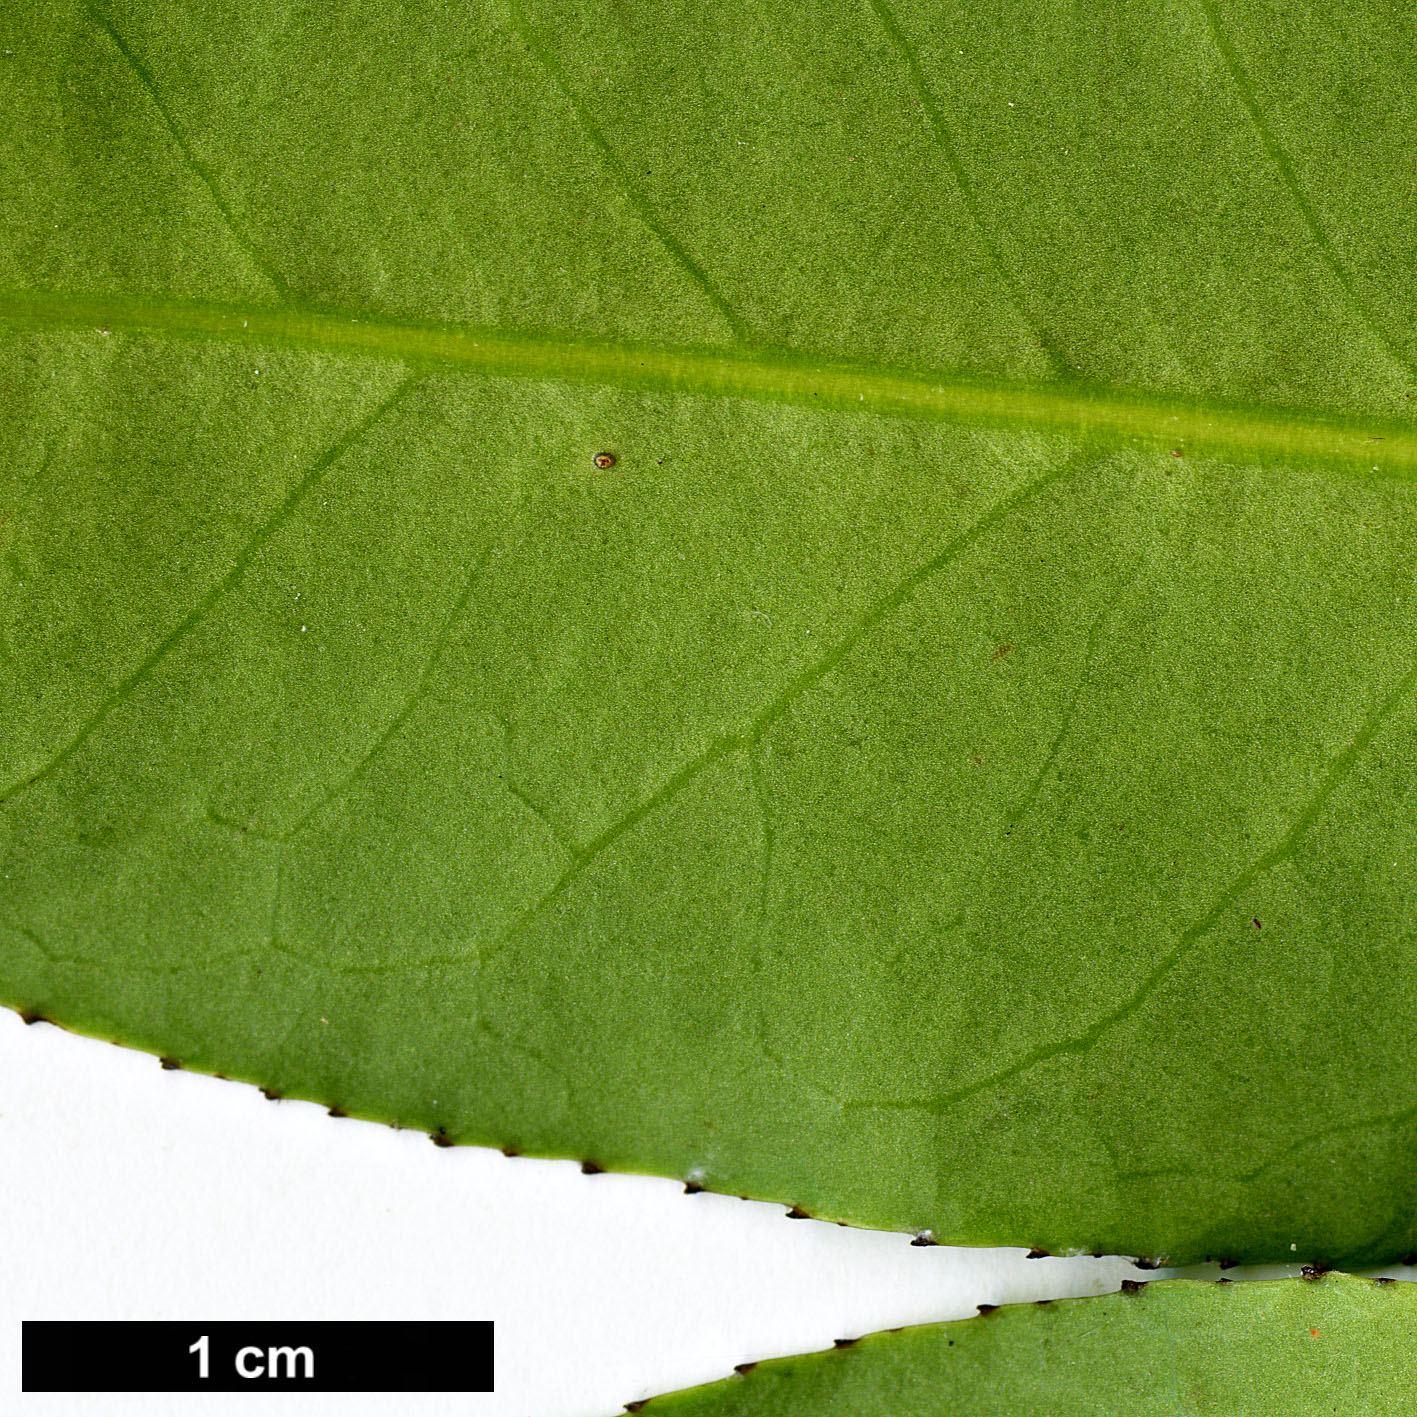 High resolution image: Family: Aquifoliaceae - Genus: Ilex - Taxon: fargesii - SpeciesSub: subsp. melanotricha